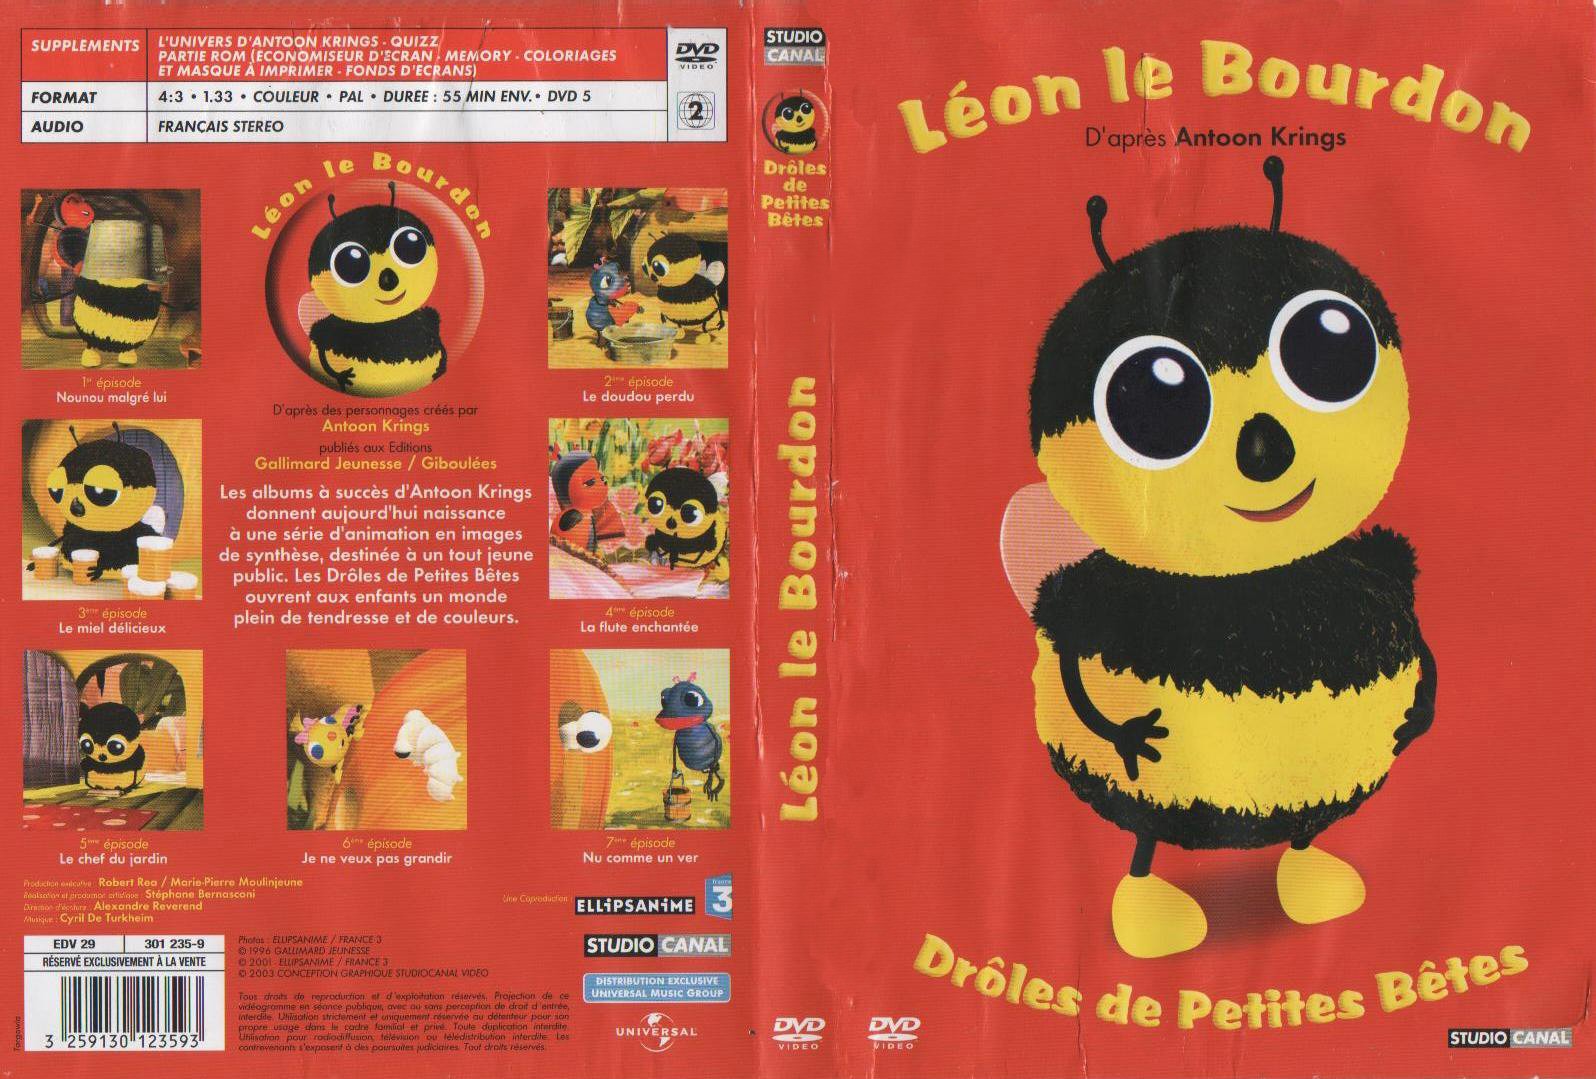 Jaquette DVD Droles de petites betes -  Lon le bourdon